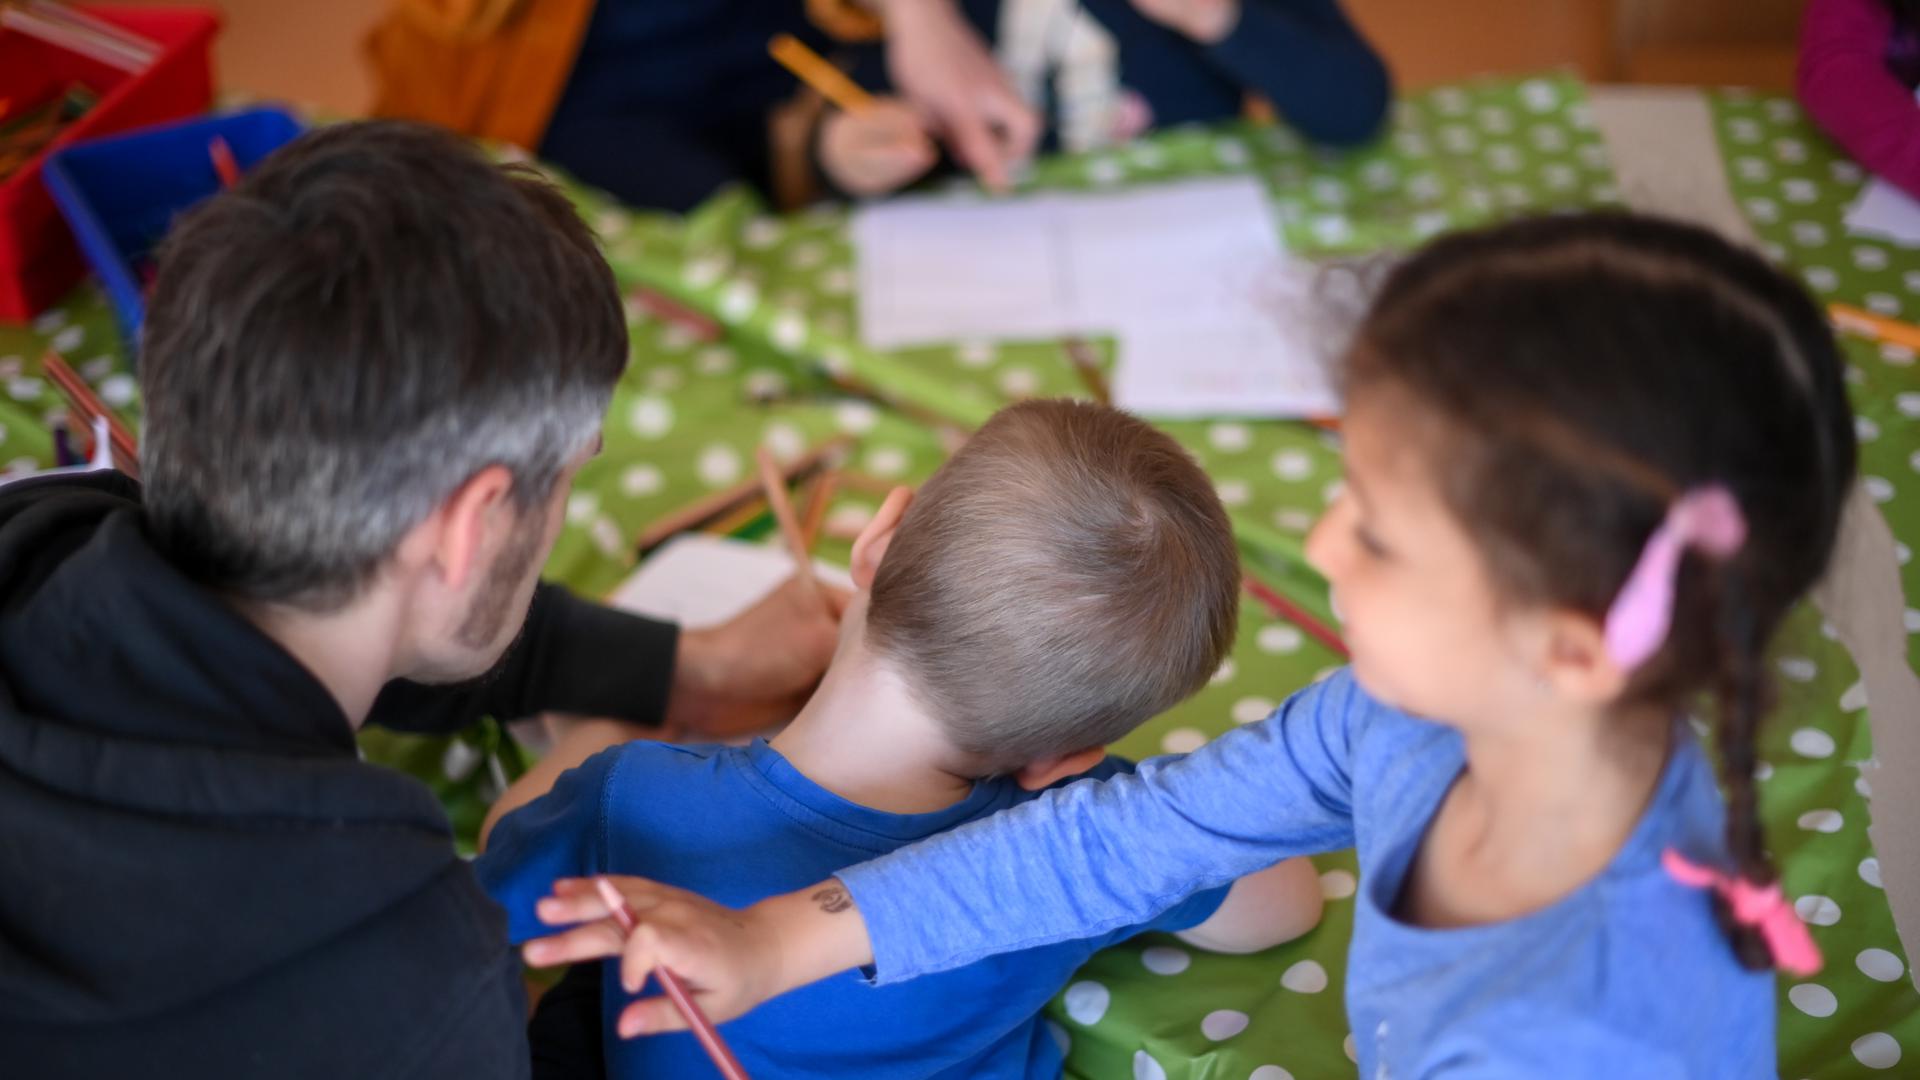 Kinder werden während der Freizeitbetreuung in der Arche in Hellersdorf betreut. Der Verein "Die Arche Christliches Kinder- und Jugendwerk" betreibt Freizeiteinrichtungen und Schulbetreuung für sozial benachteiligte Kinder. +++ dpa-Bildfunk +++